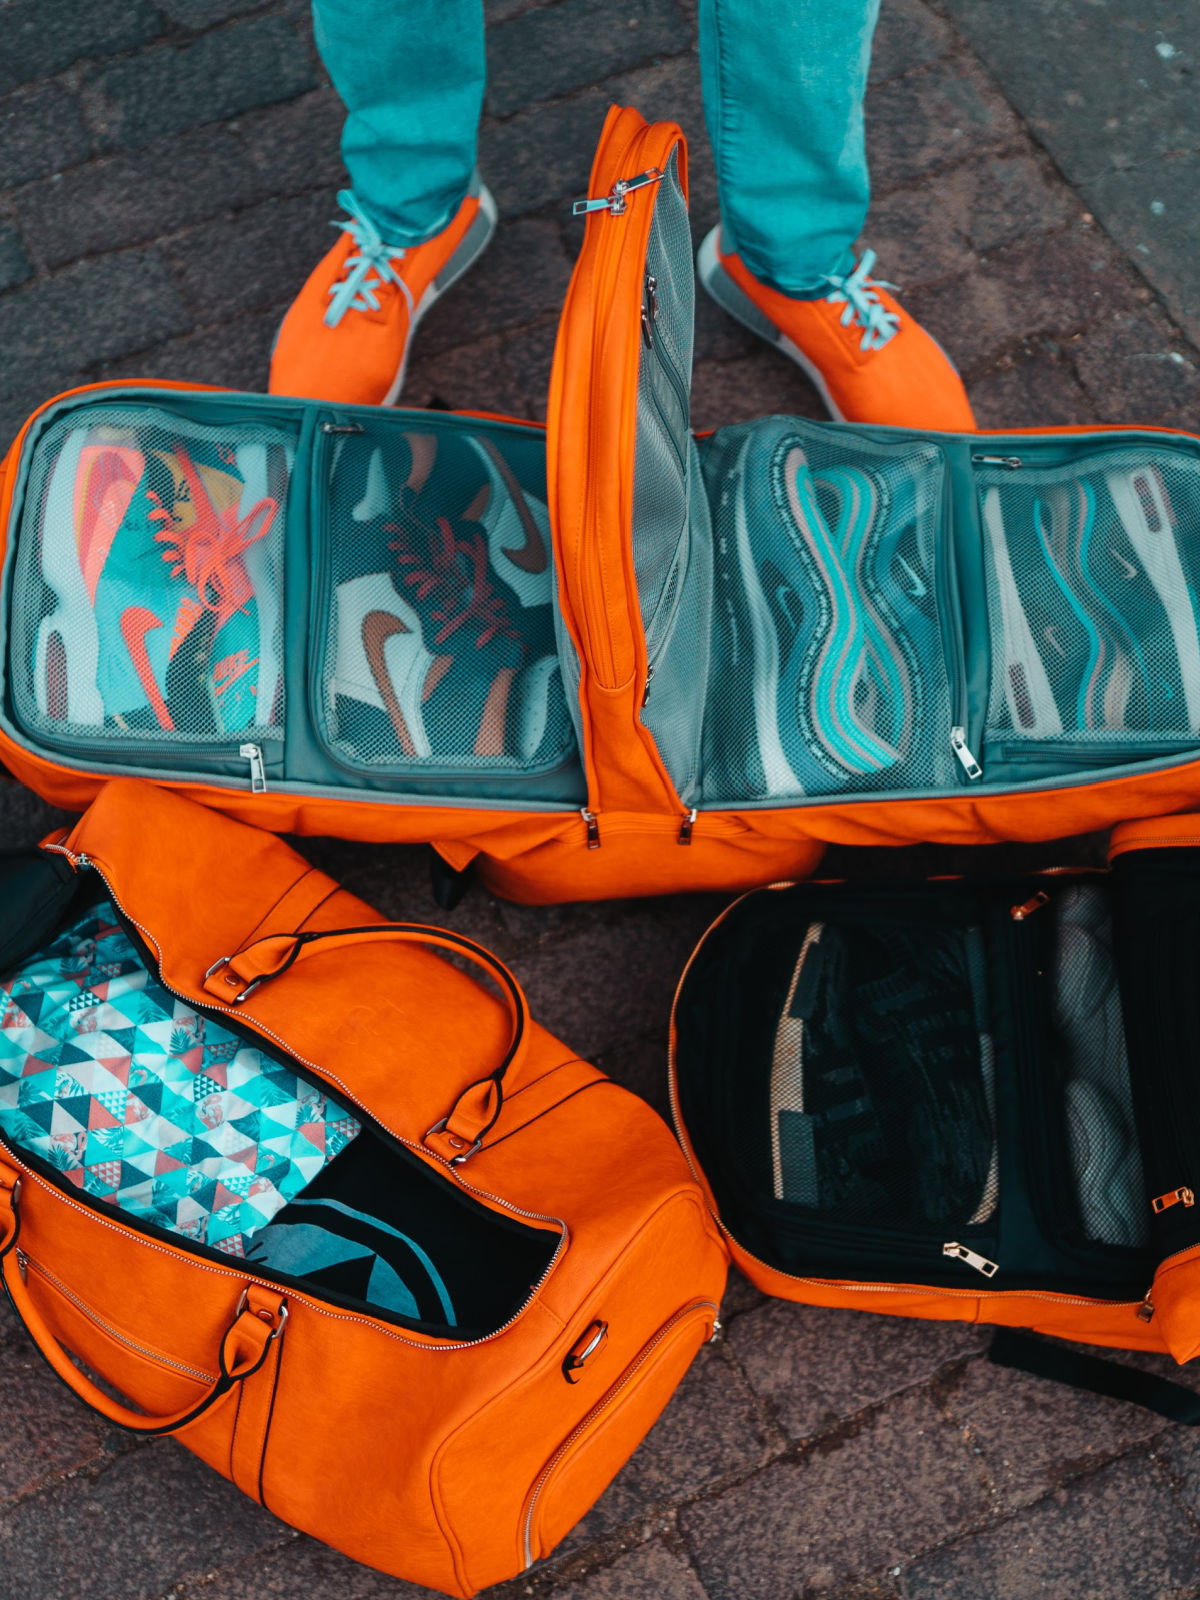 louis vuitton travel bags – Brand Republix